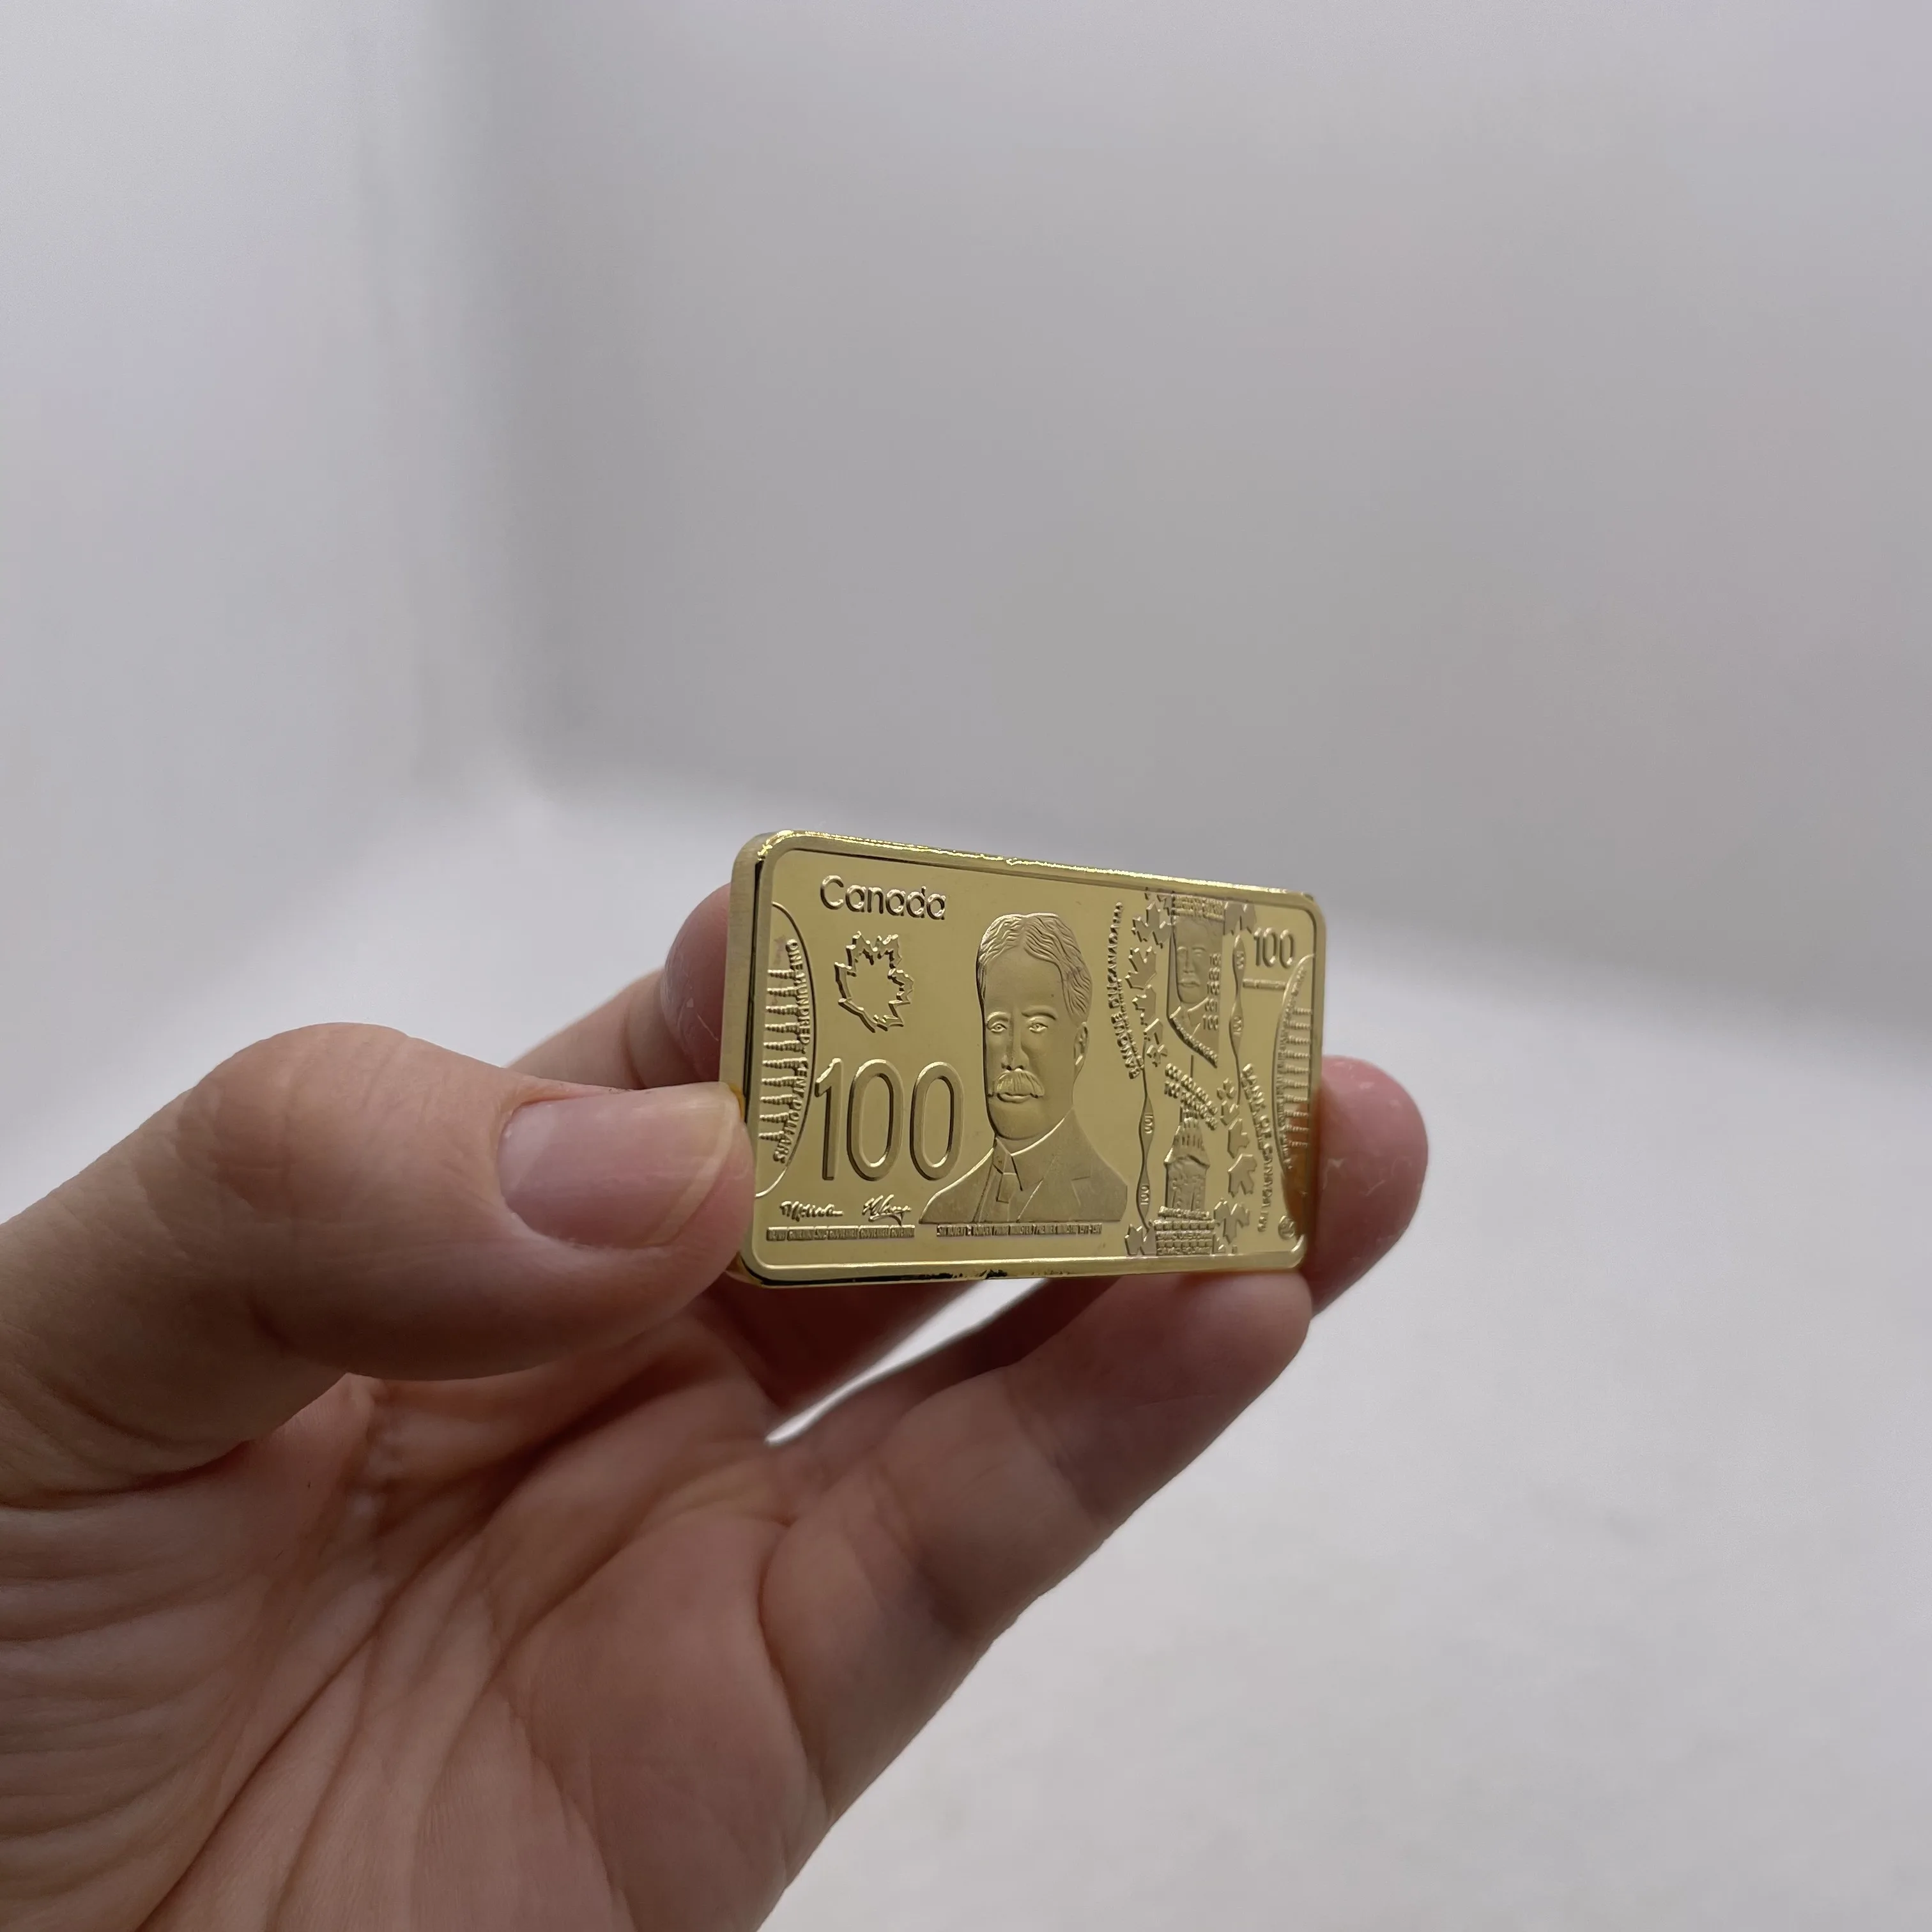 24-каратный позолоченный канадский слиток чистого золота стоимостью 100 долларов, коллекционные металлические слитки, достойные коллекции изделий из металла